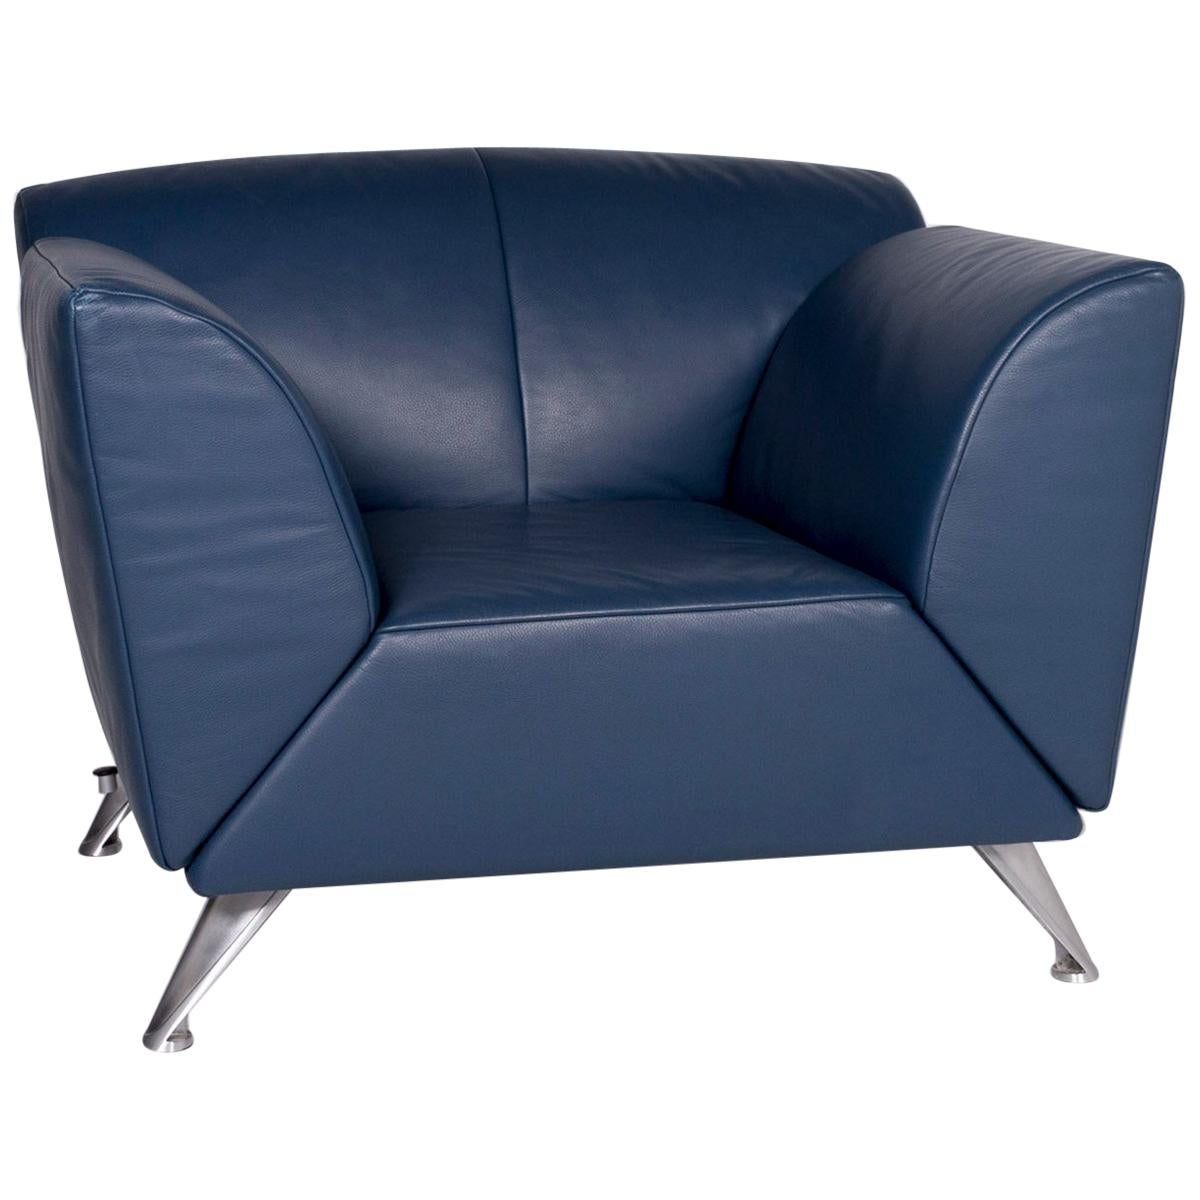 JORI Leather Armchair Blue Feature For Sale